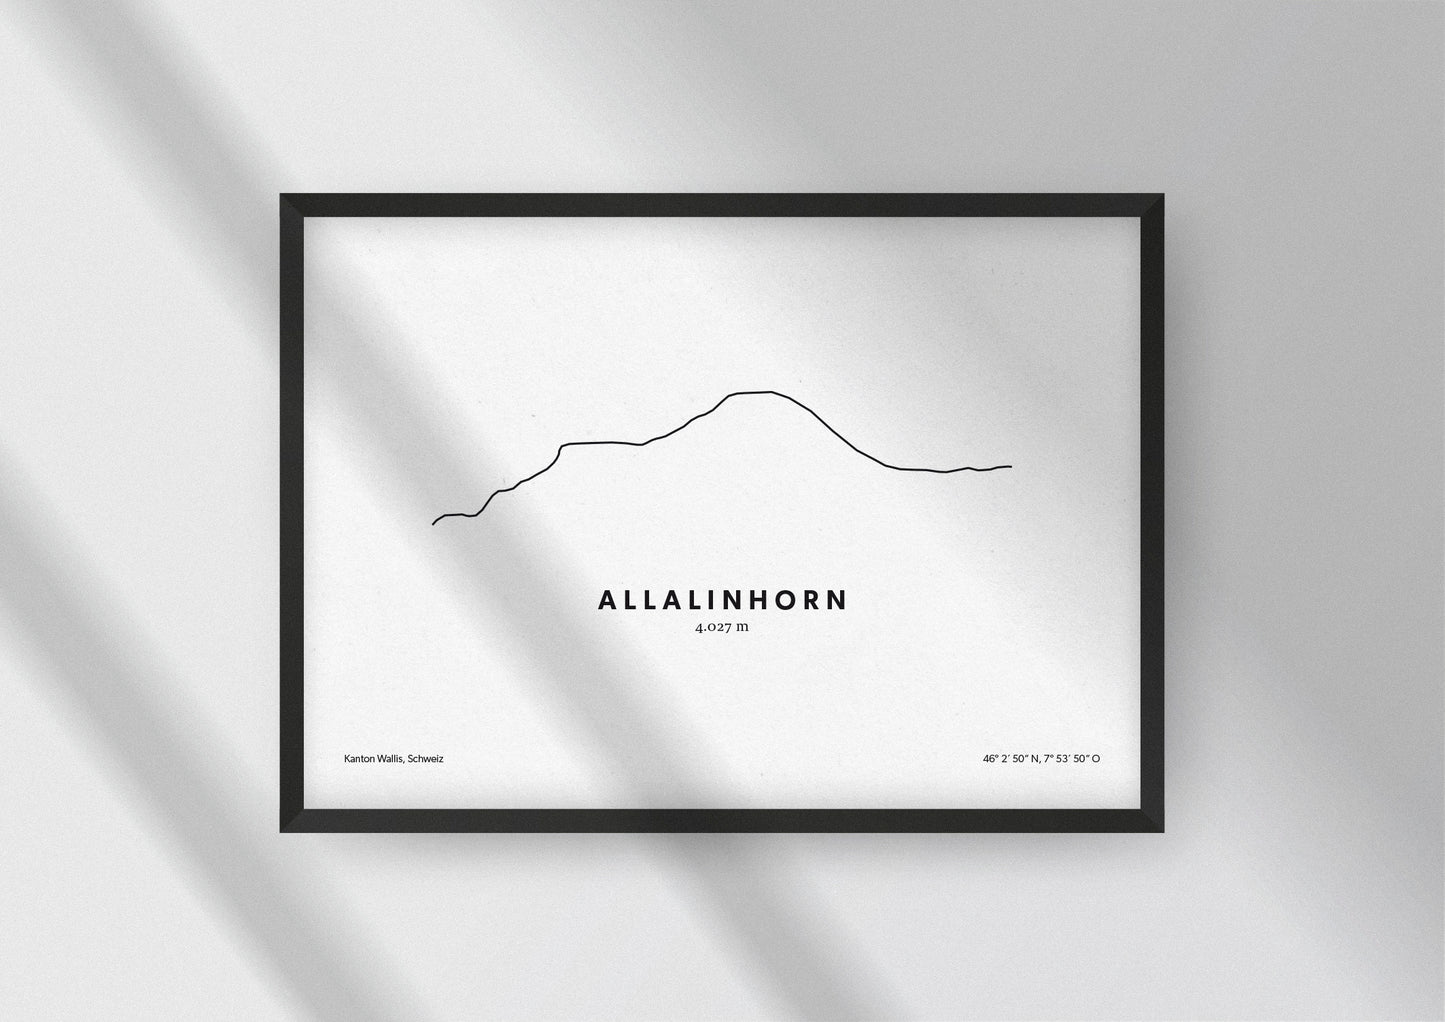 Minimalistische Illustration des Allalinhorn in den Walliser Alpen, als stilvoller Einrichtungsgegenstand für Zuhause.